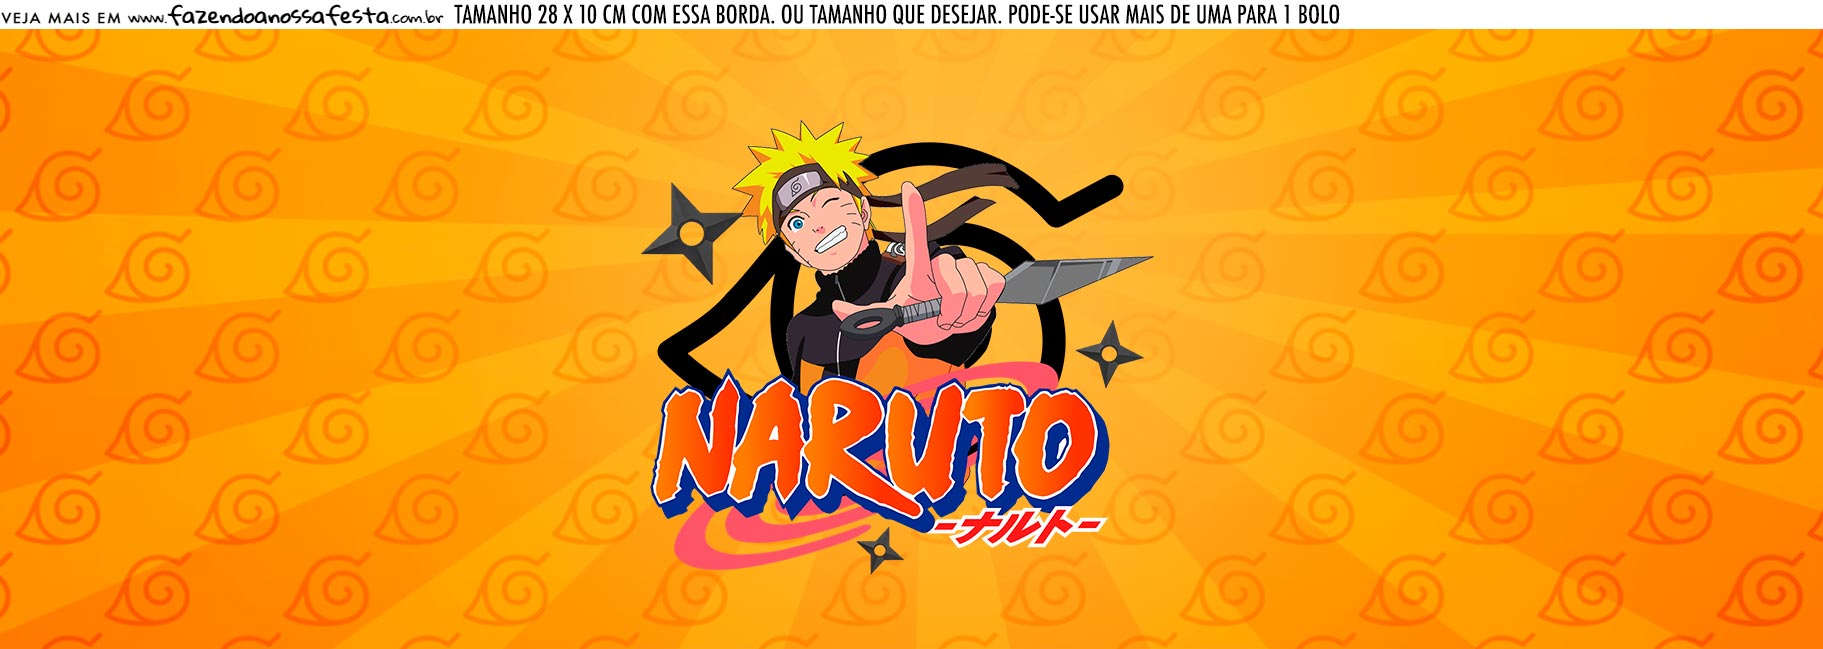 Abertura Lateral: O Fim de Naruto